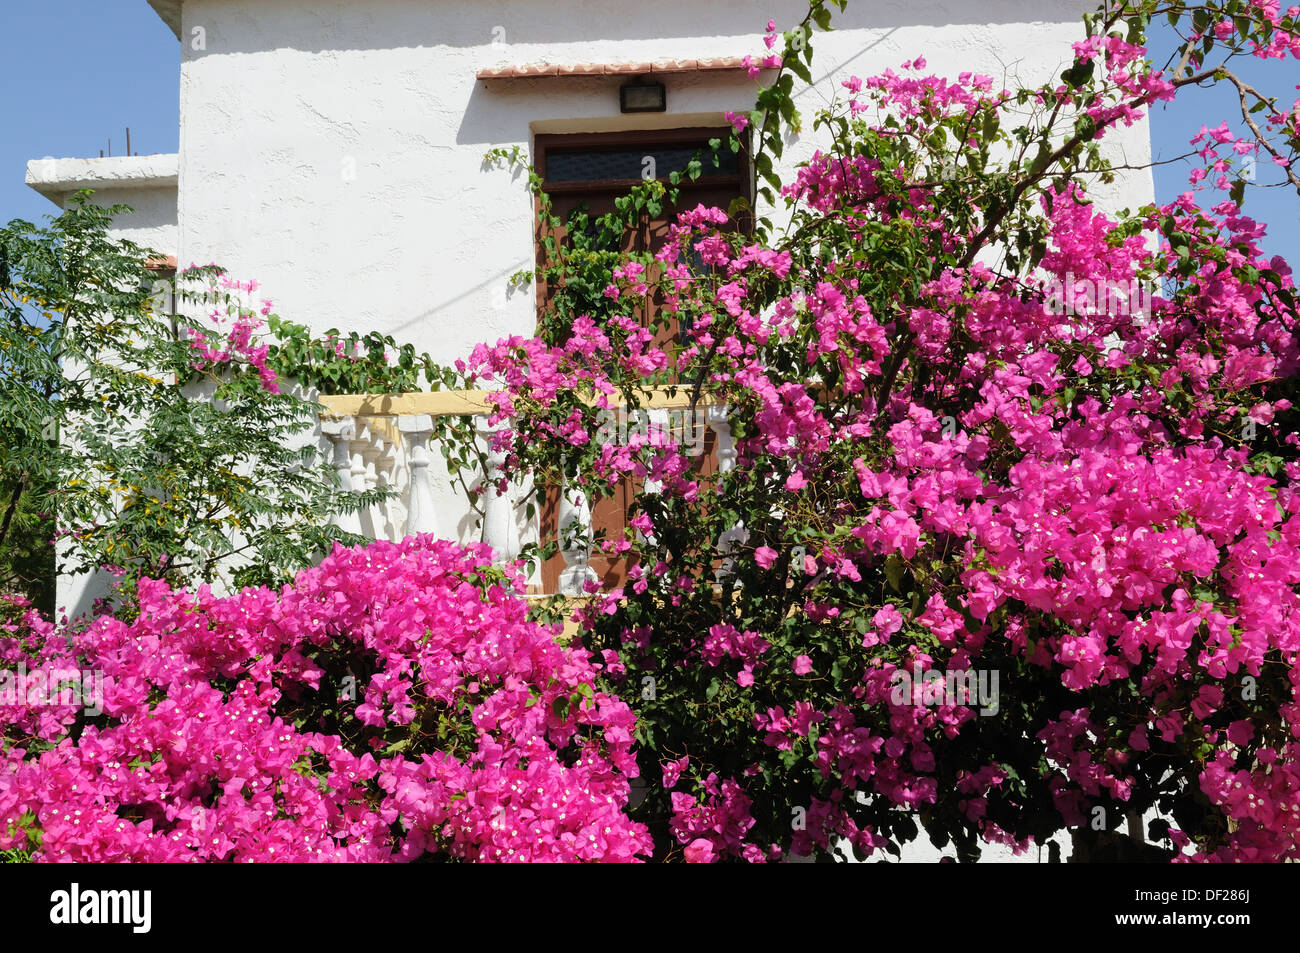 Terrasse patio recouvert de bougainvillées rose vif Halki Chalki Le Dodécanèse Grèce Banque D'Images